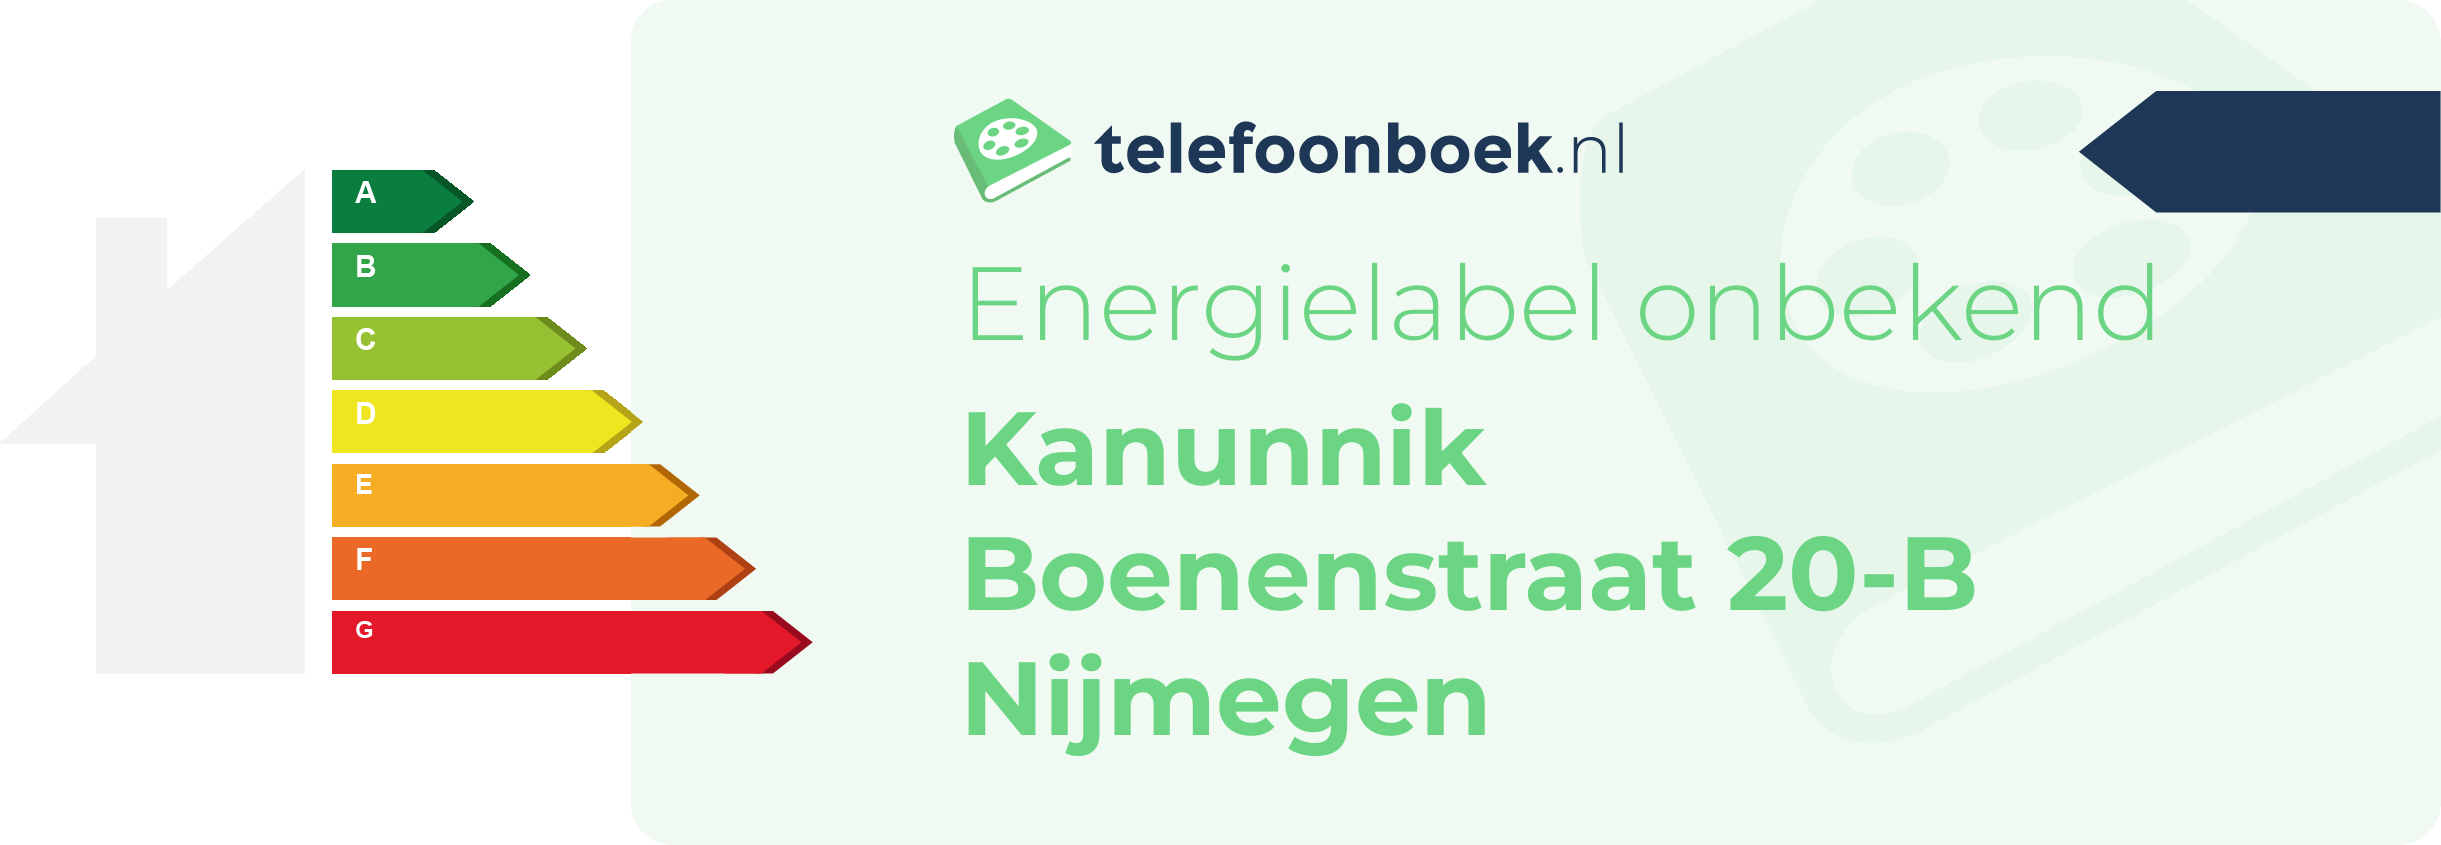 Energielabel Kanunnik Boenenstraat 20-B Nijmegen